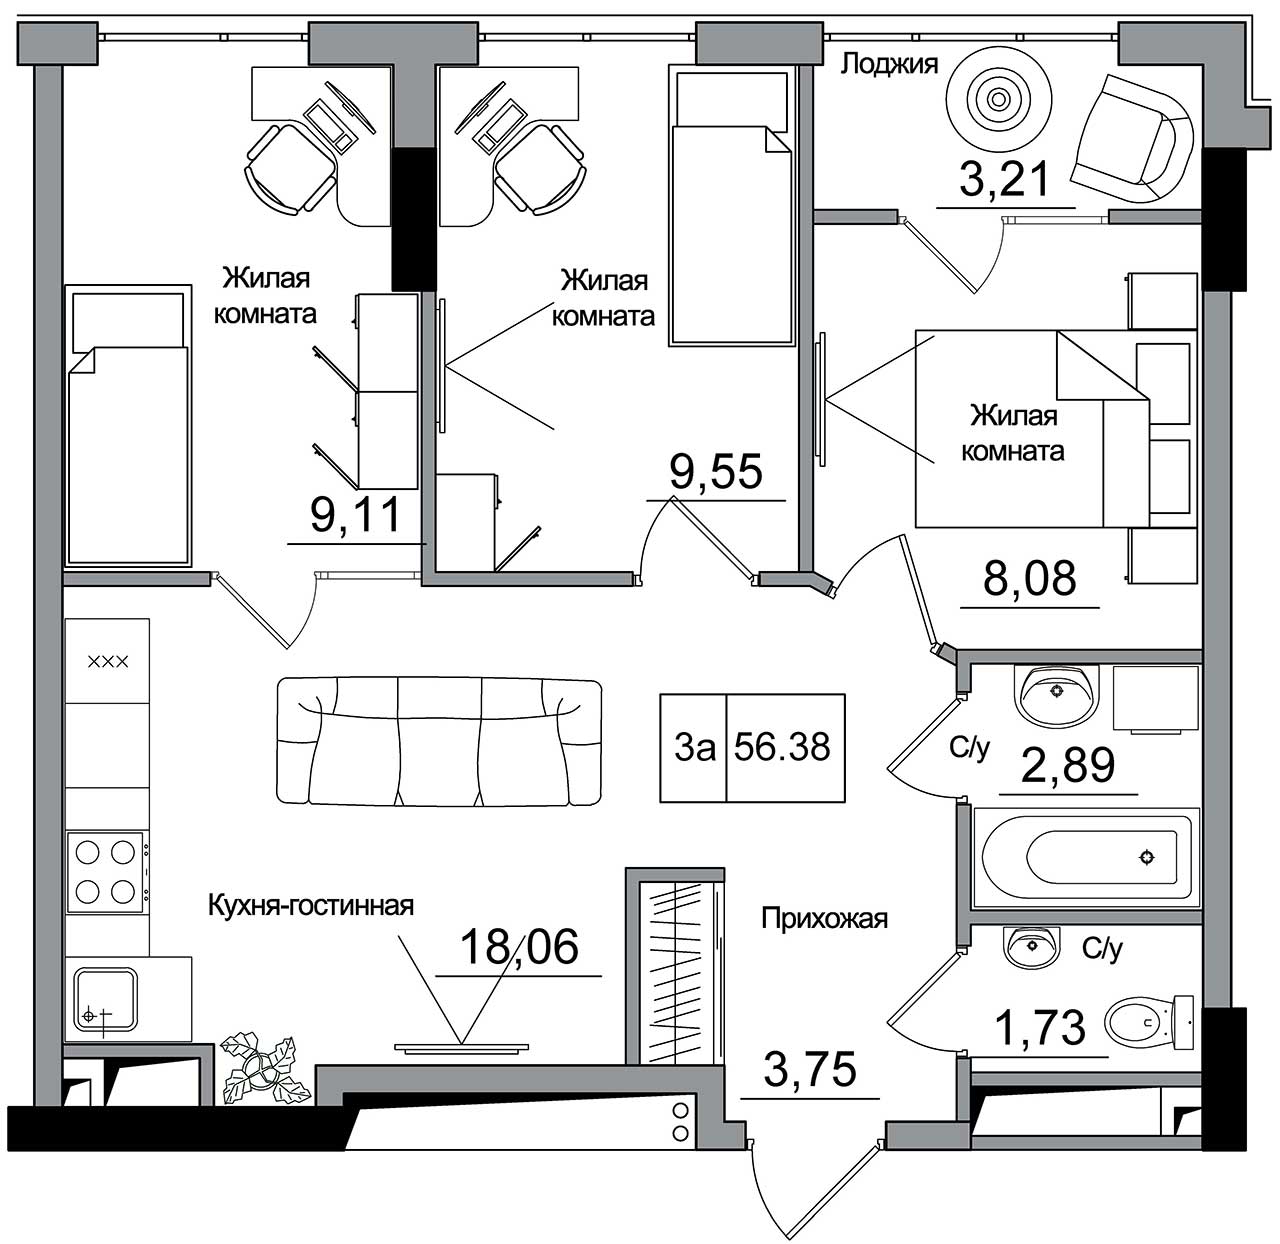 Планування 3-к квартира площею 56.38м2, AB-16-12/00008.